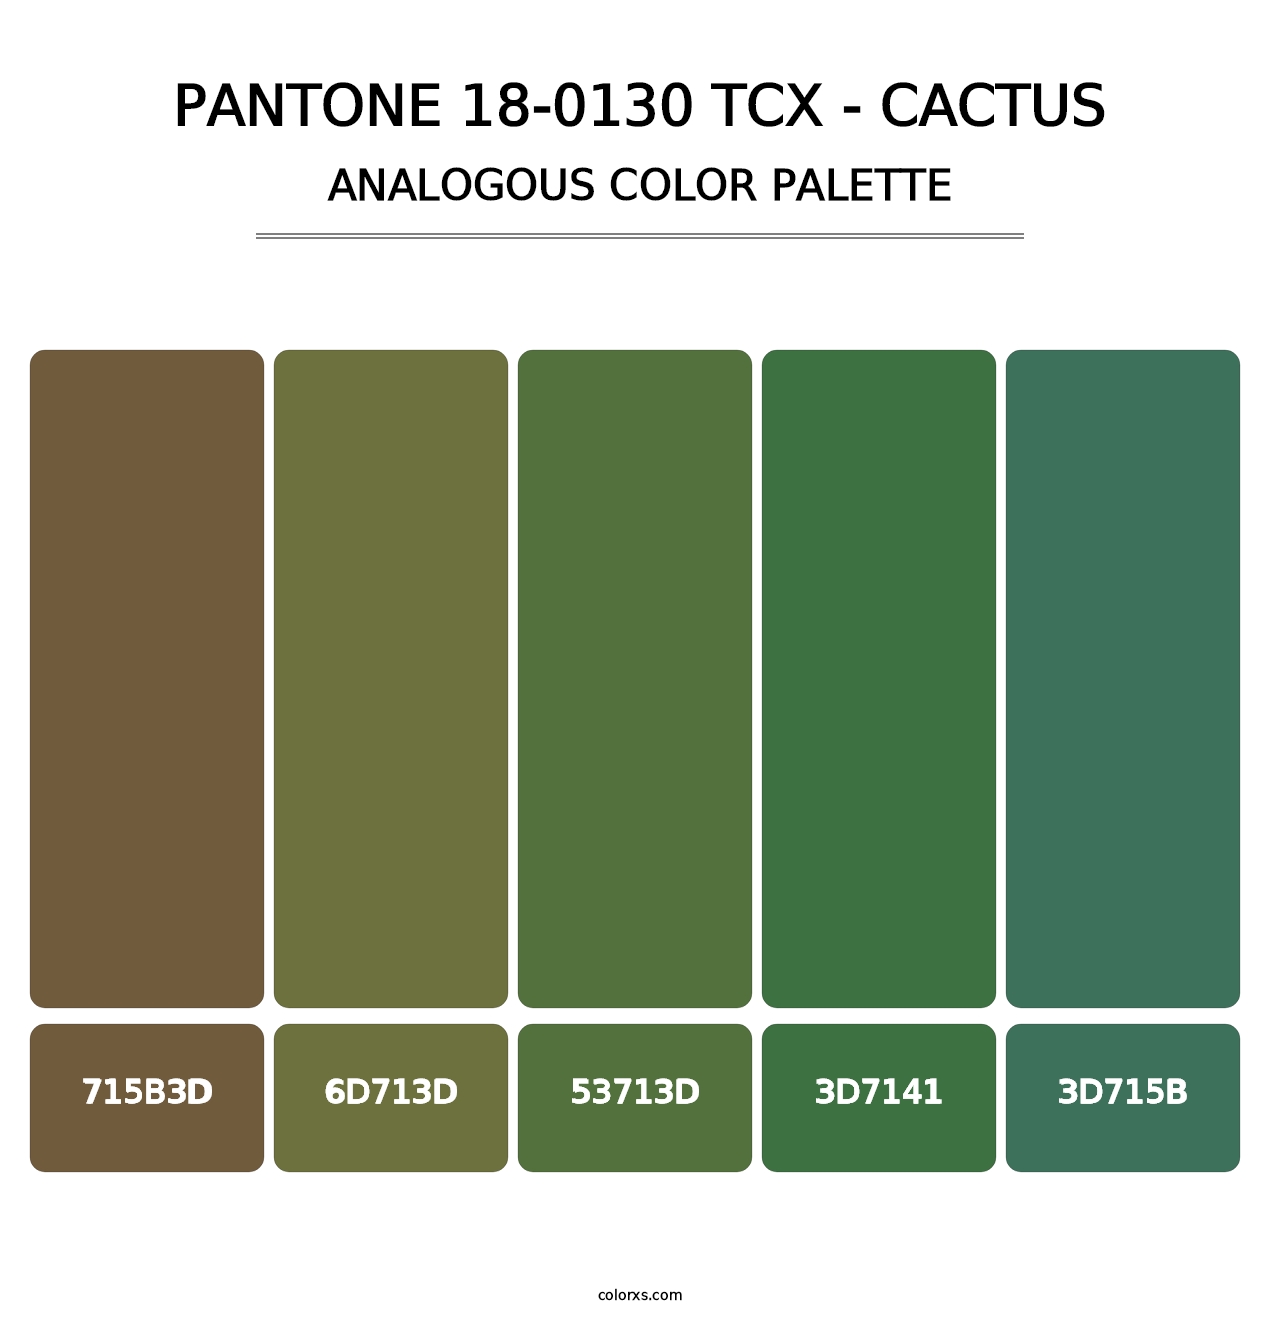 PANTONE 18-0130 TCX - Cactus - Analogous Color Palette